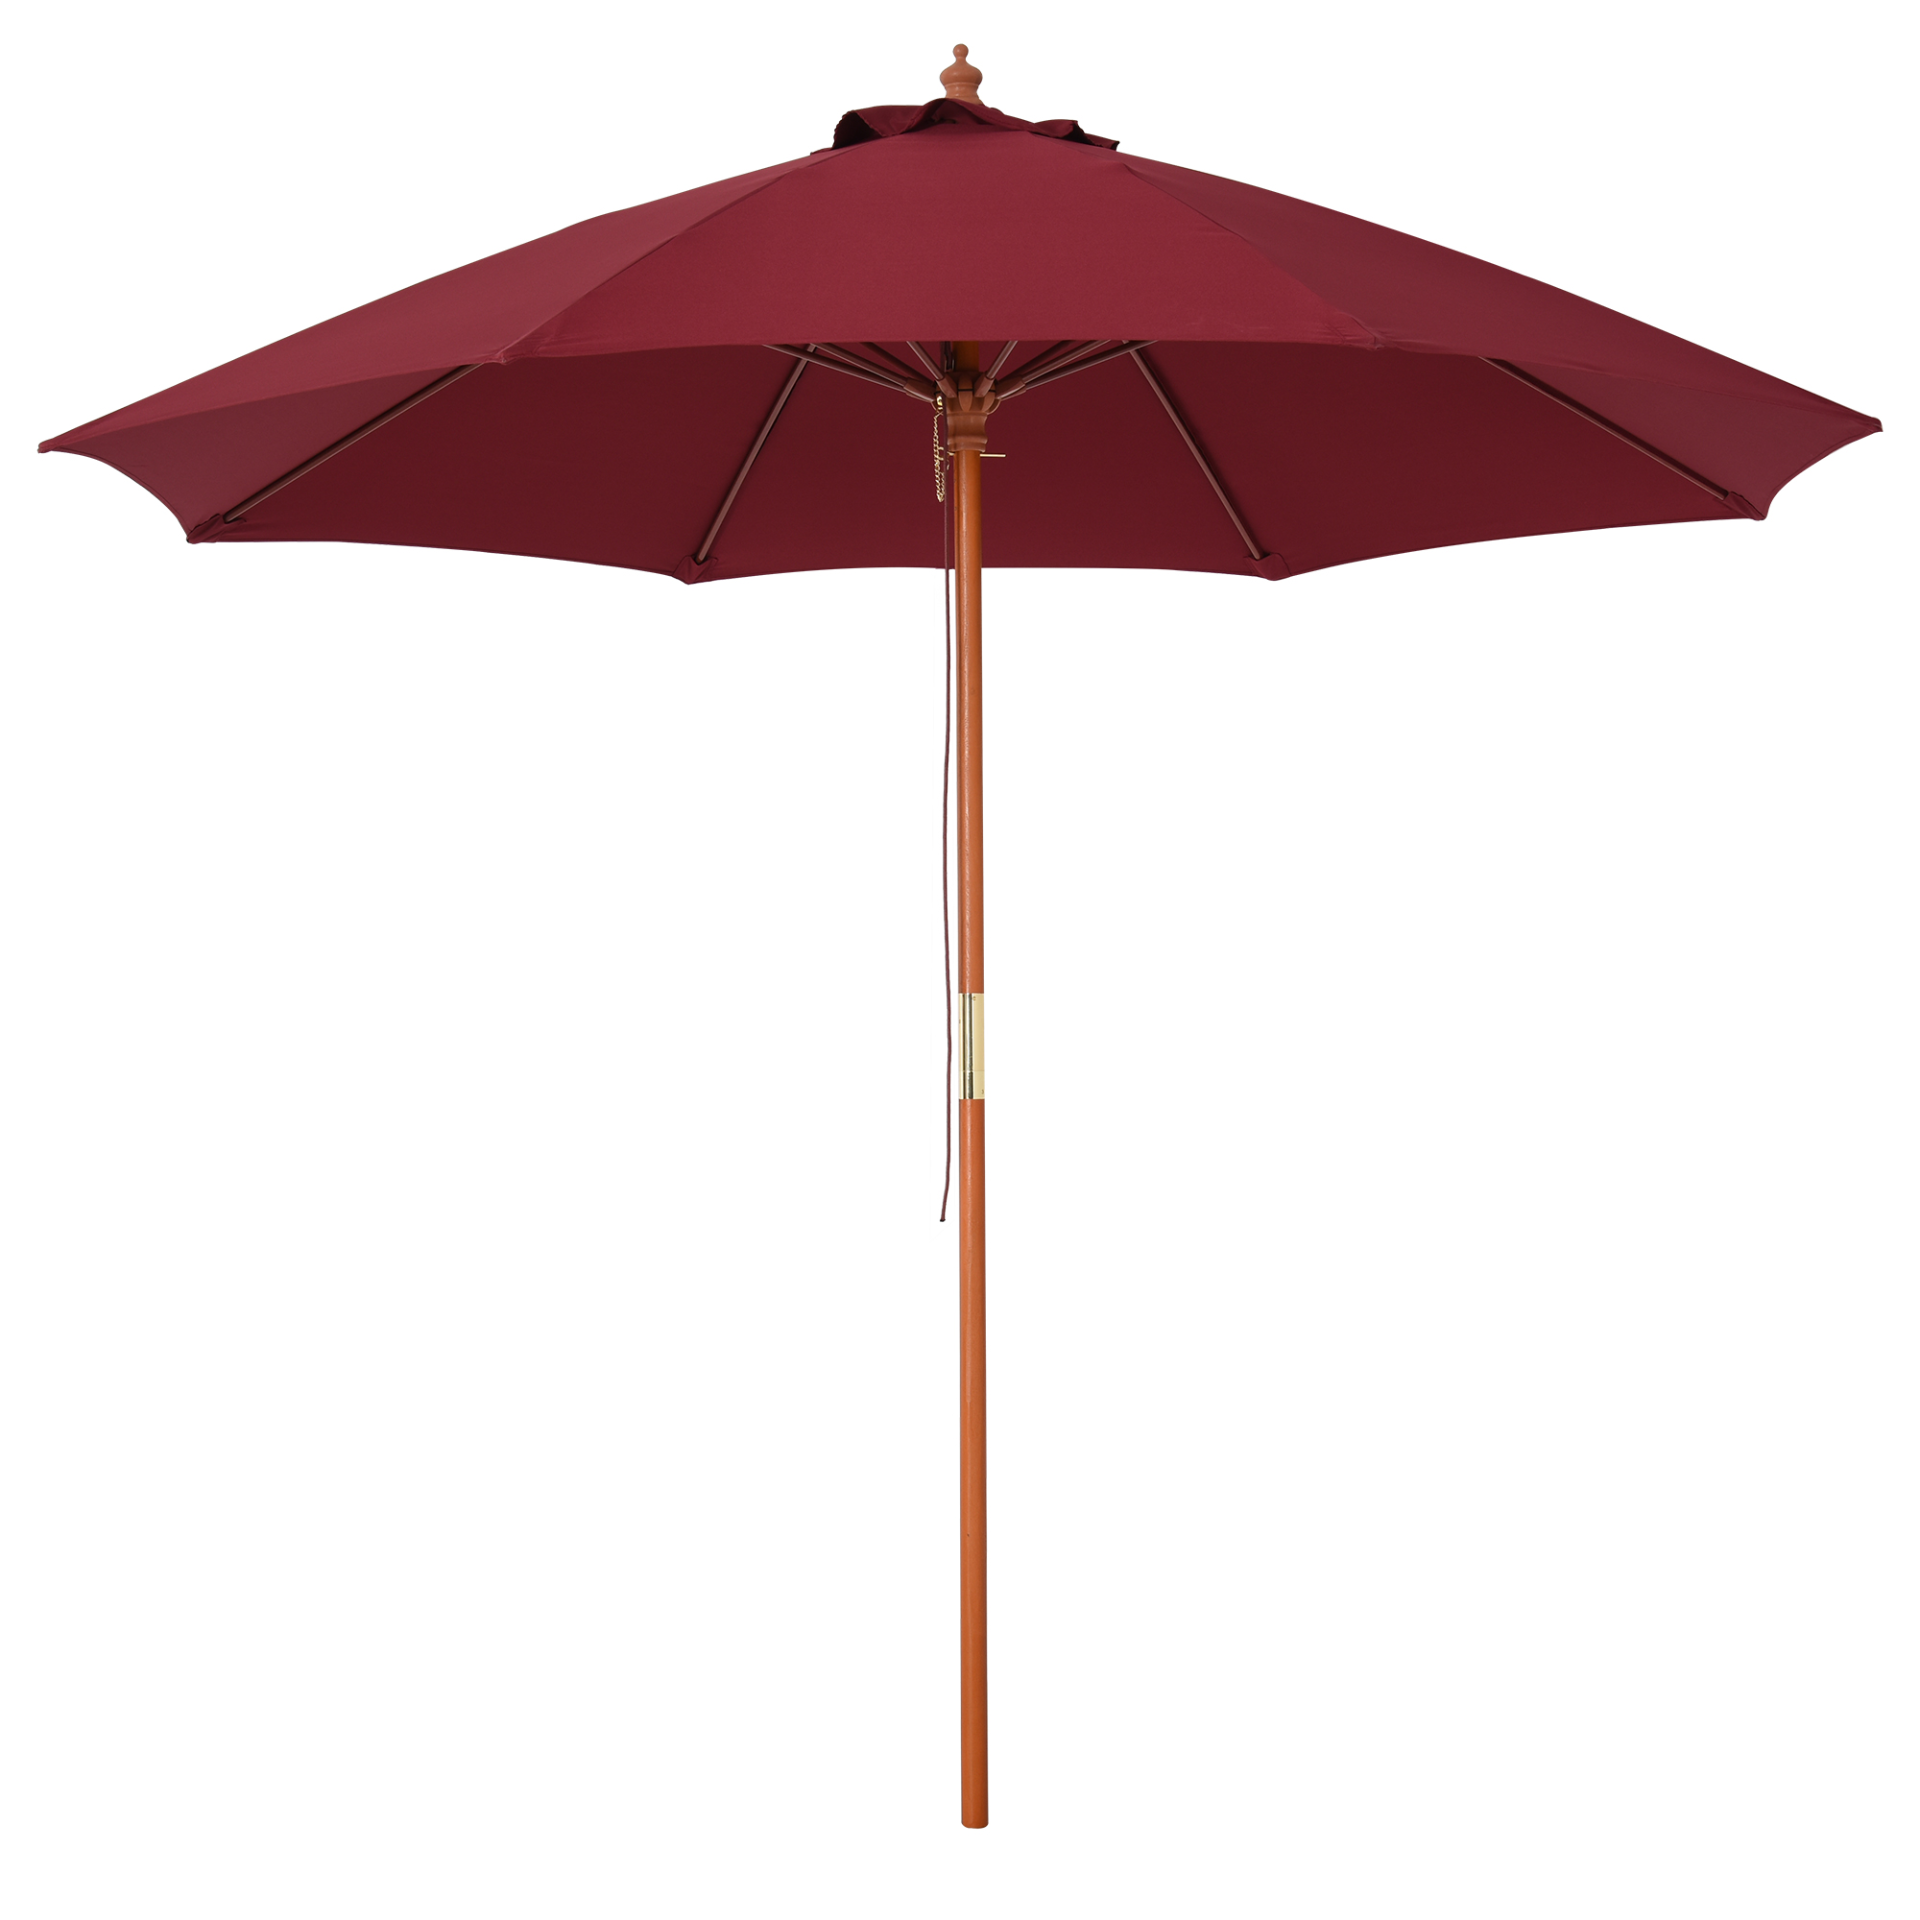 Outsunny 2.5m Wood Parasol Garden Sun Shade Patio Outdoor Market Umbrella Canopy